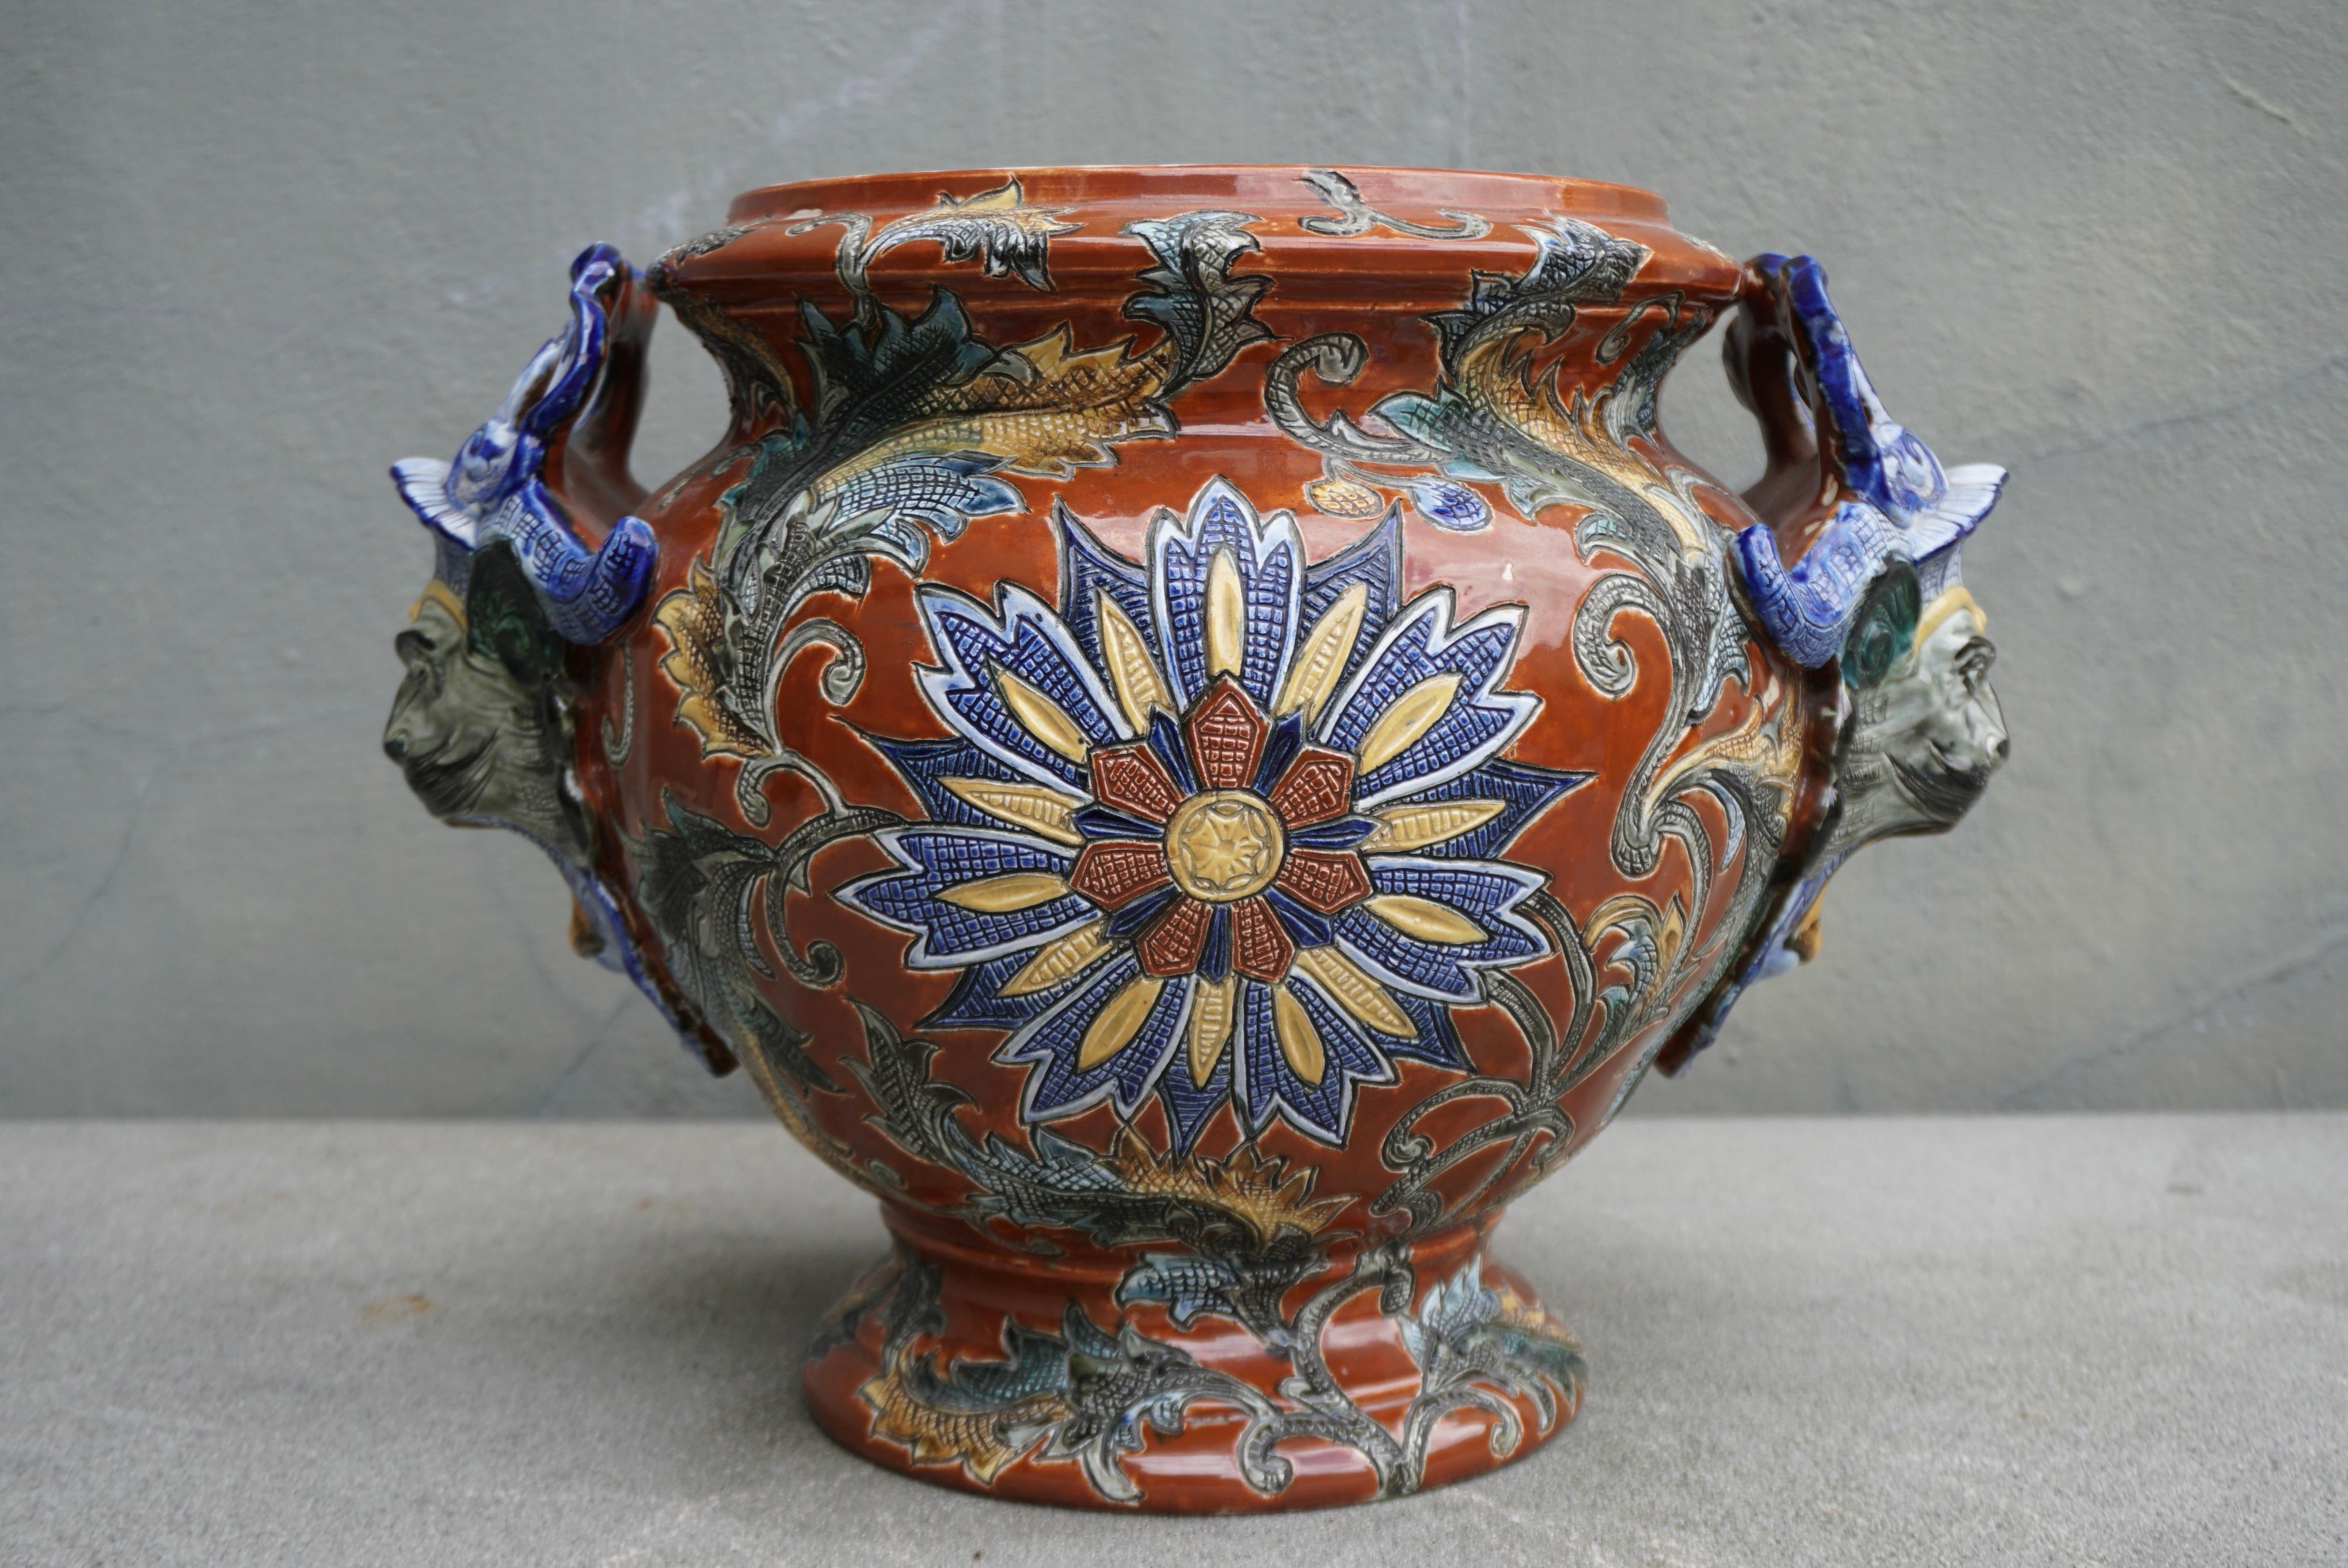 Dieser runde und farbenfrohe antike Blumentopf wurde in Frankreich um 1890 hergestellt. Das elegante Porzellanstück ist in ausgezeichnetem Zustand mit satten Farben in Blau, Braun und Gelb bemalt. 

Höhe 12,9